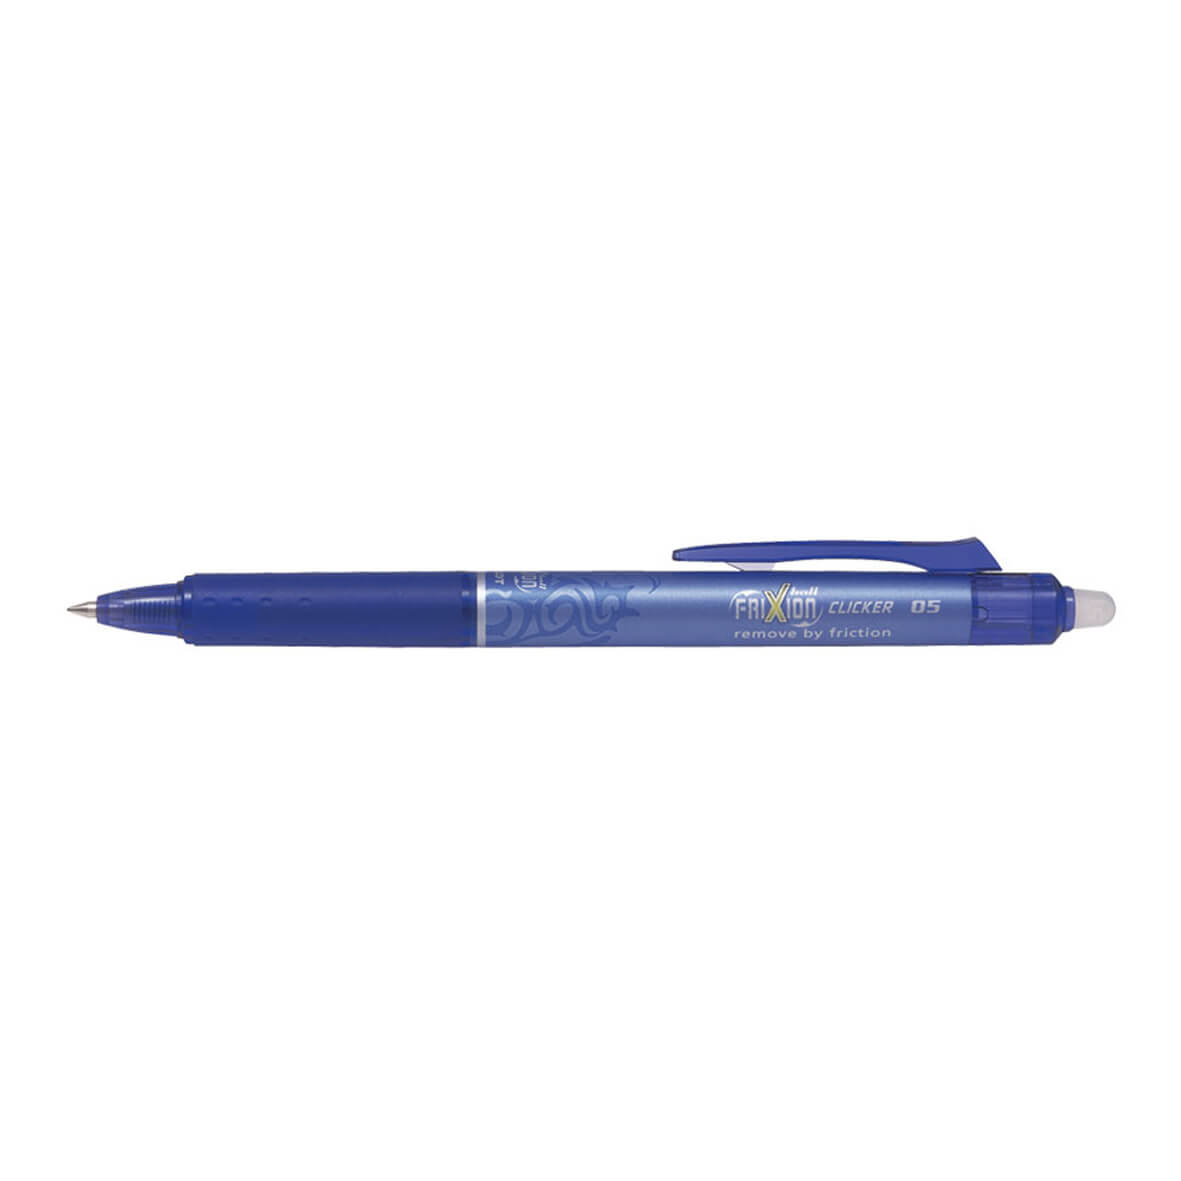 Zwaaien Bourgondië Lil Pilot FriXion Ball clicker pen | uitgumbare pen kopen | My Lovely Notebook